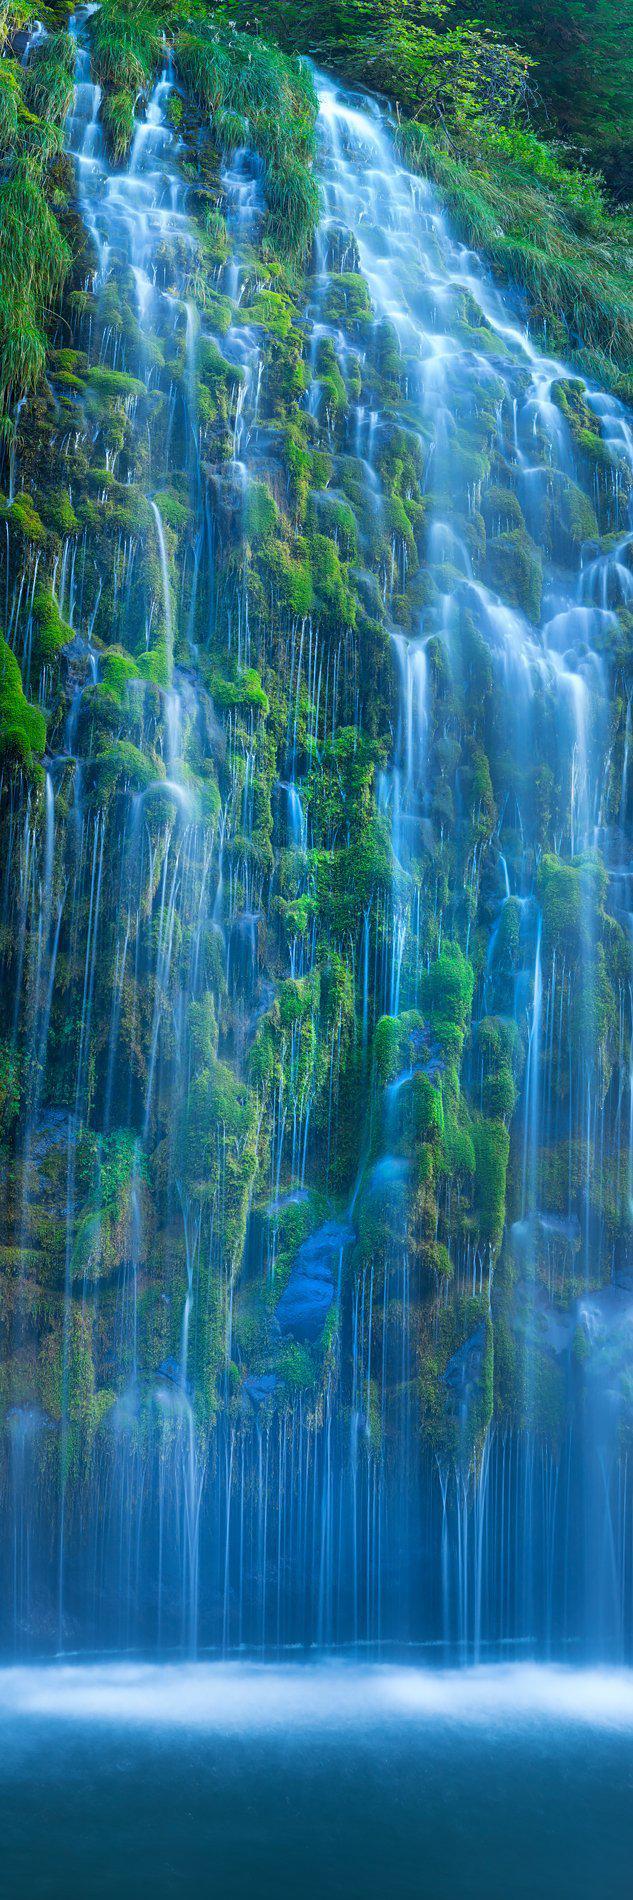 Mossbrae falls in dunsmuir, california. By Lijah Hanley. 